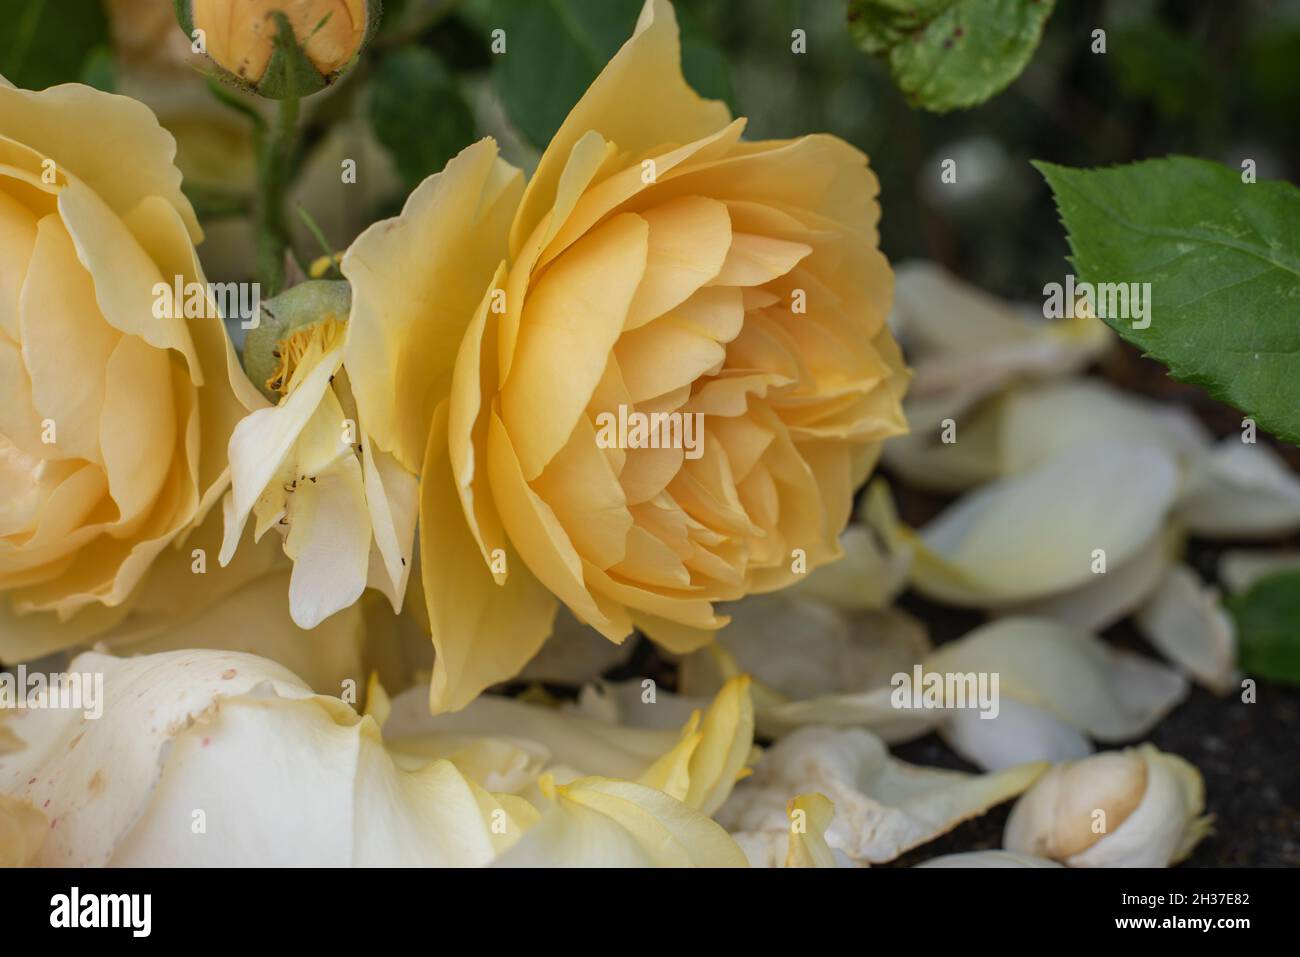 corte de un arbusto de rosas con flores amarillentas de color crema y pétalos tumbados en el suelo Foto de stock